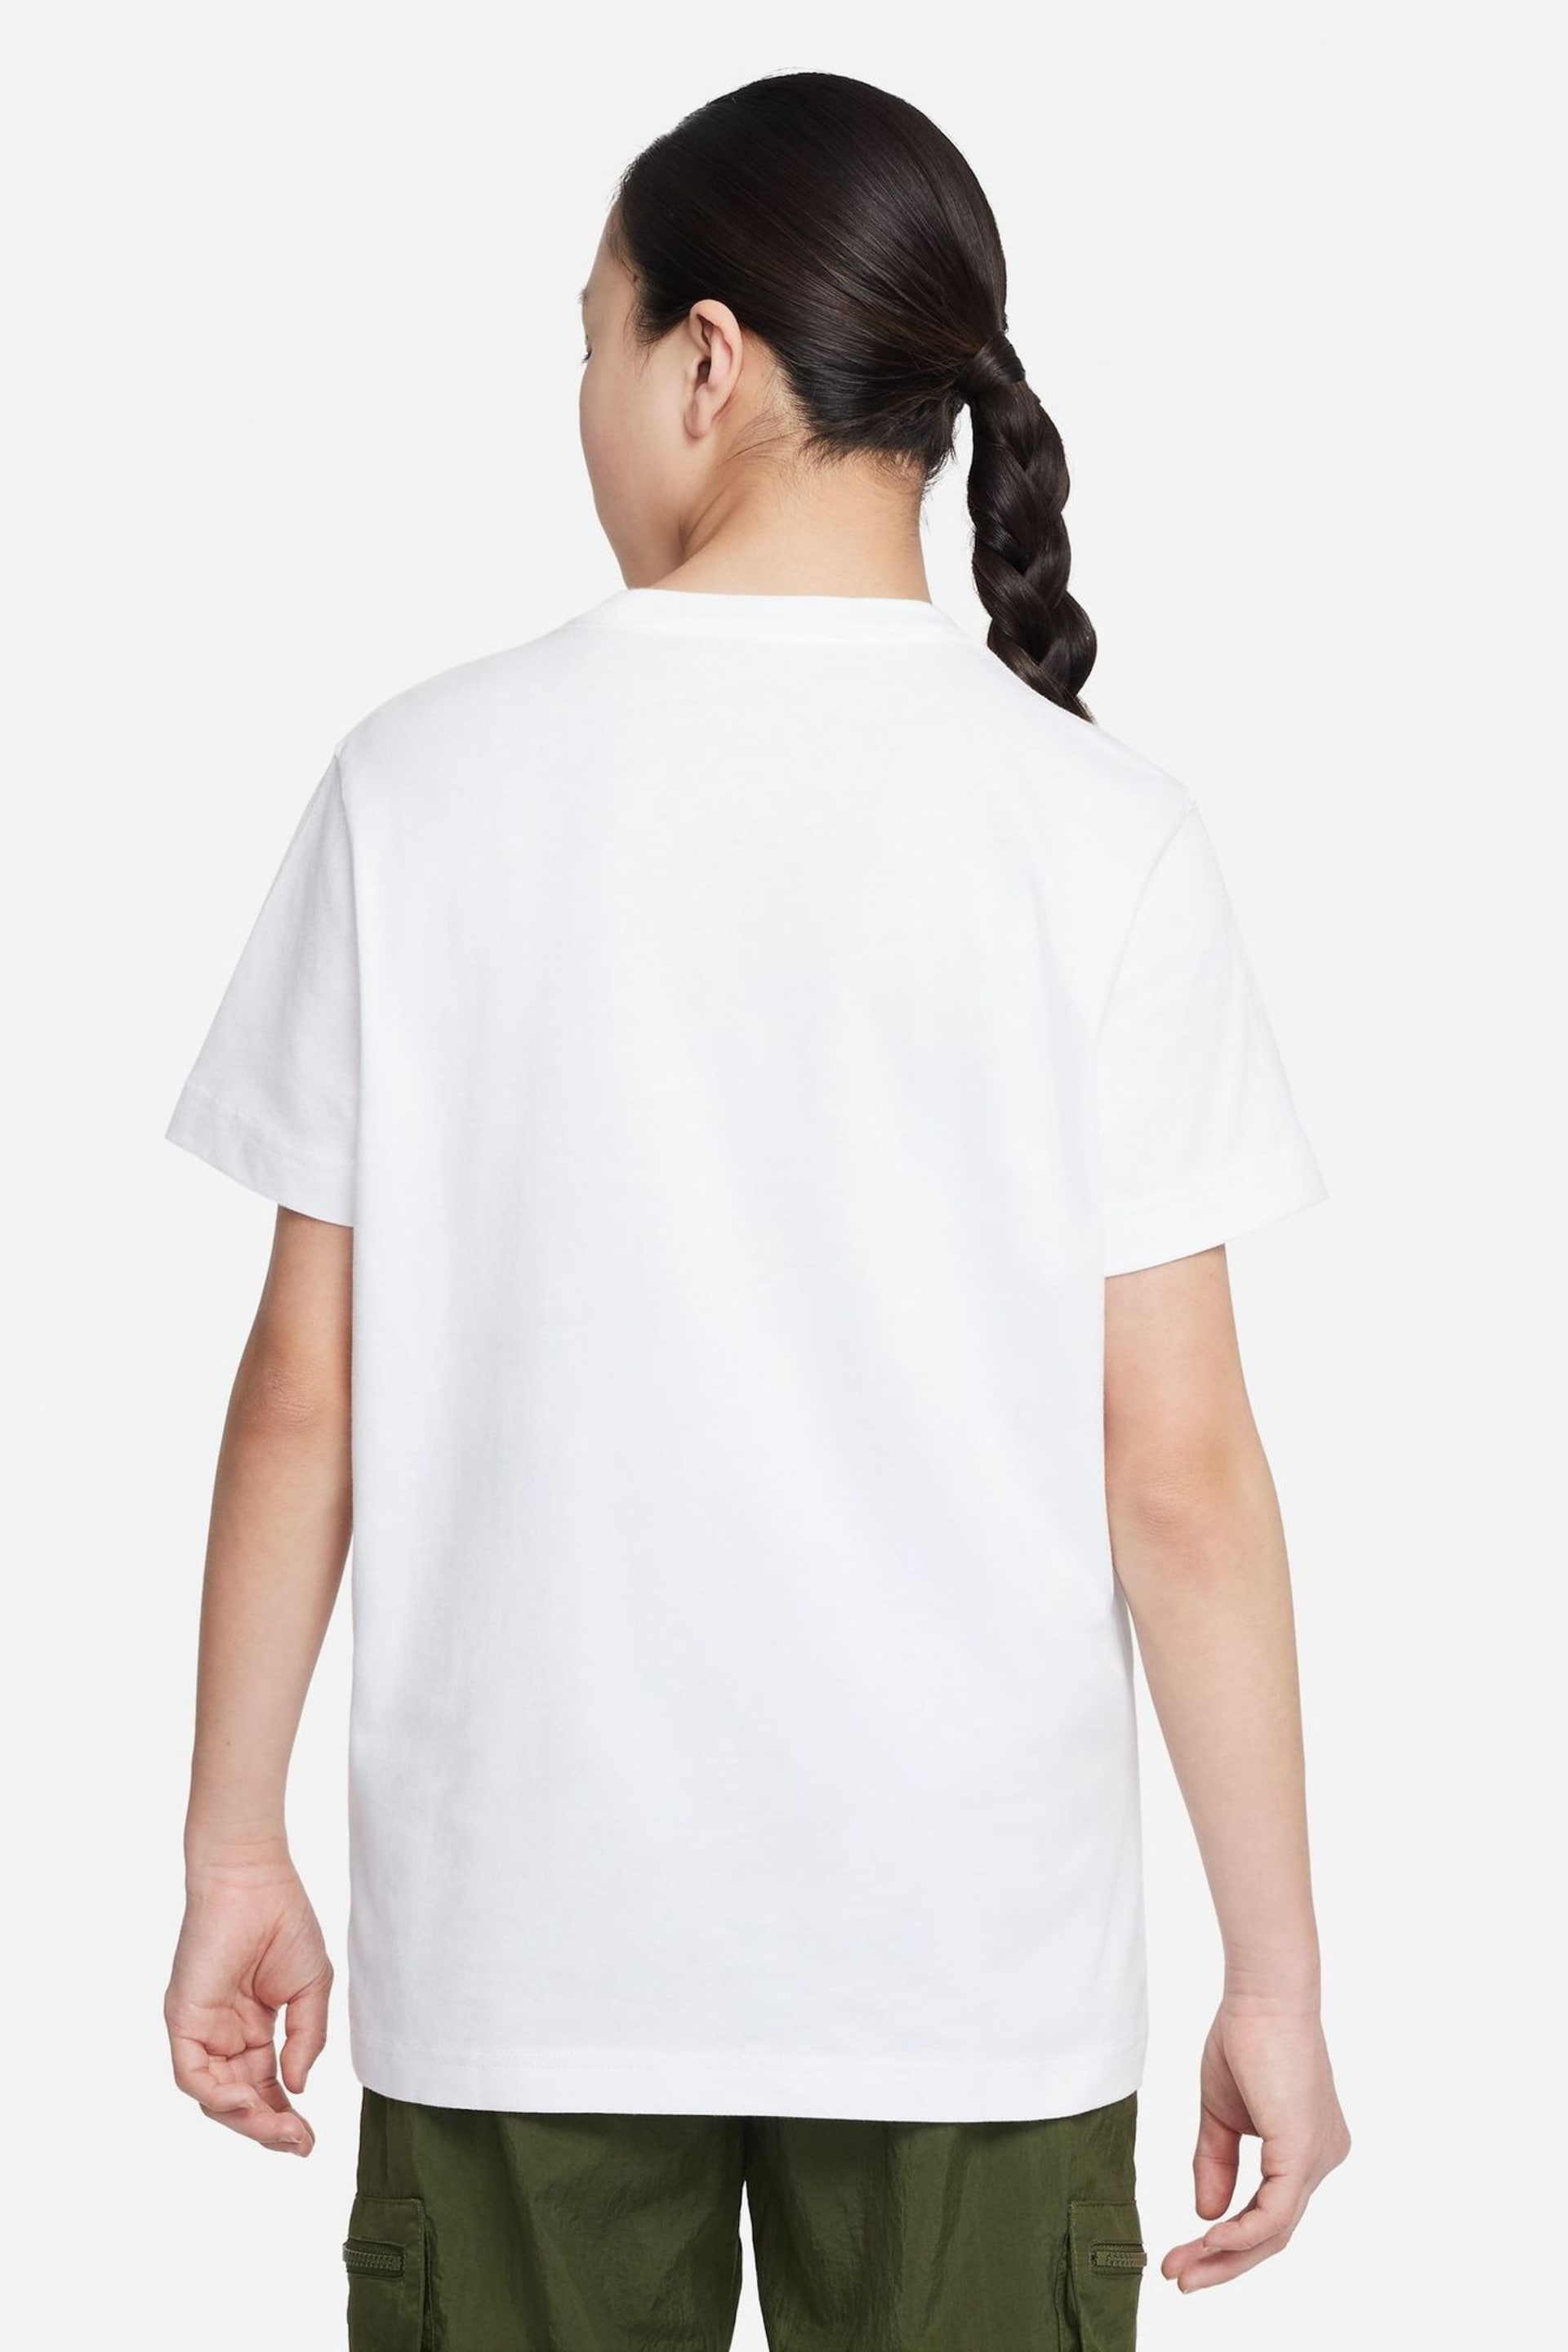 Nike White Oversized Futura T-Shirt - Image 2 of 4